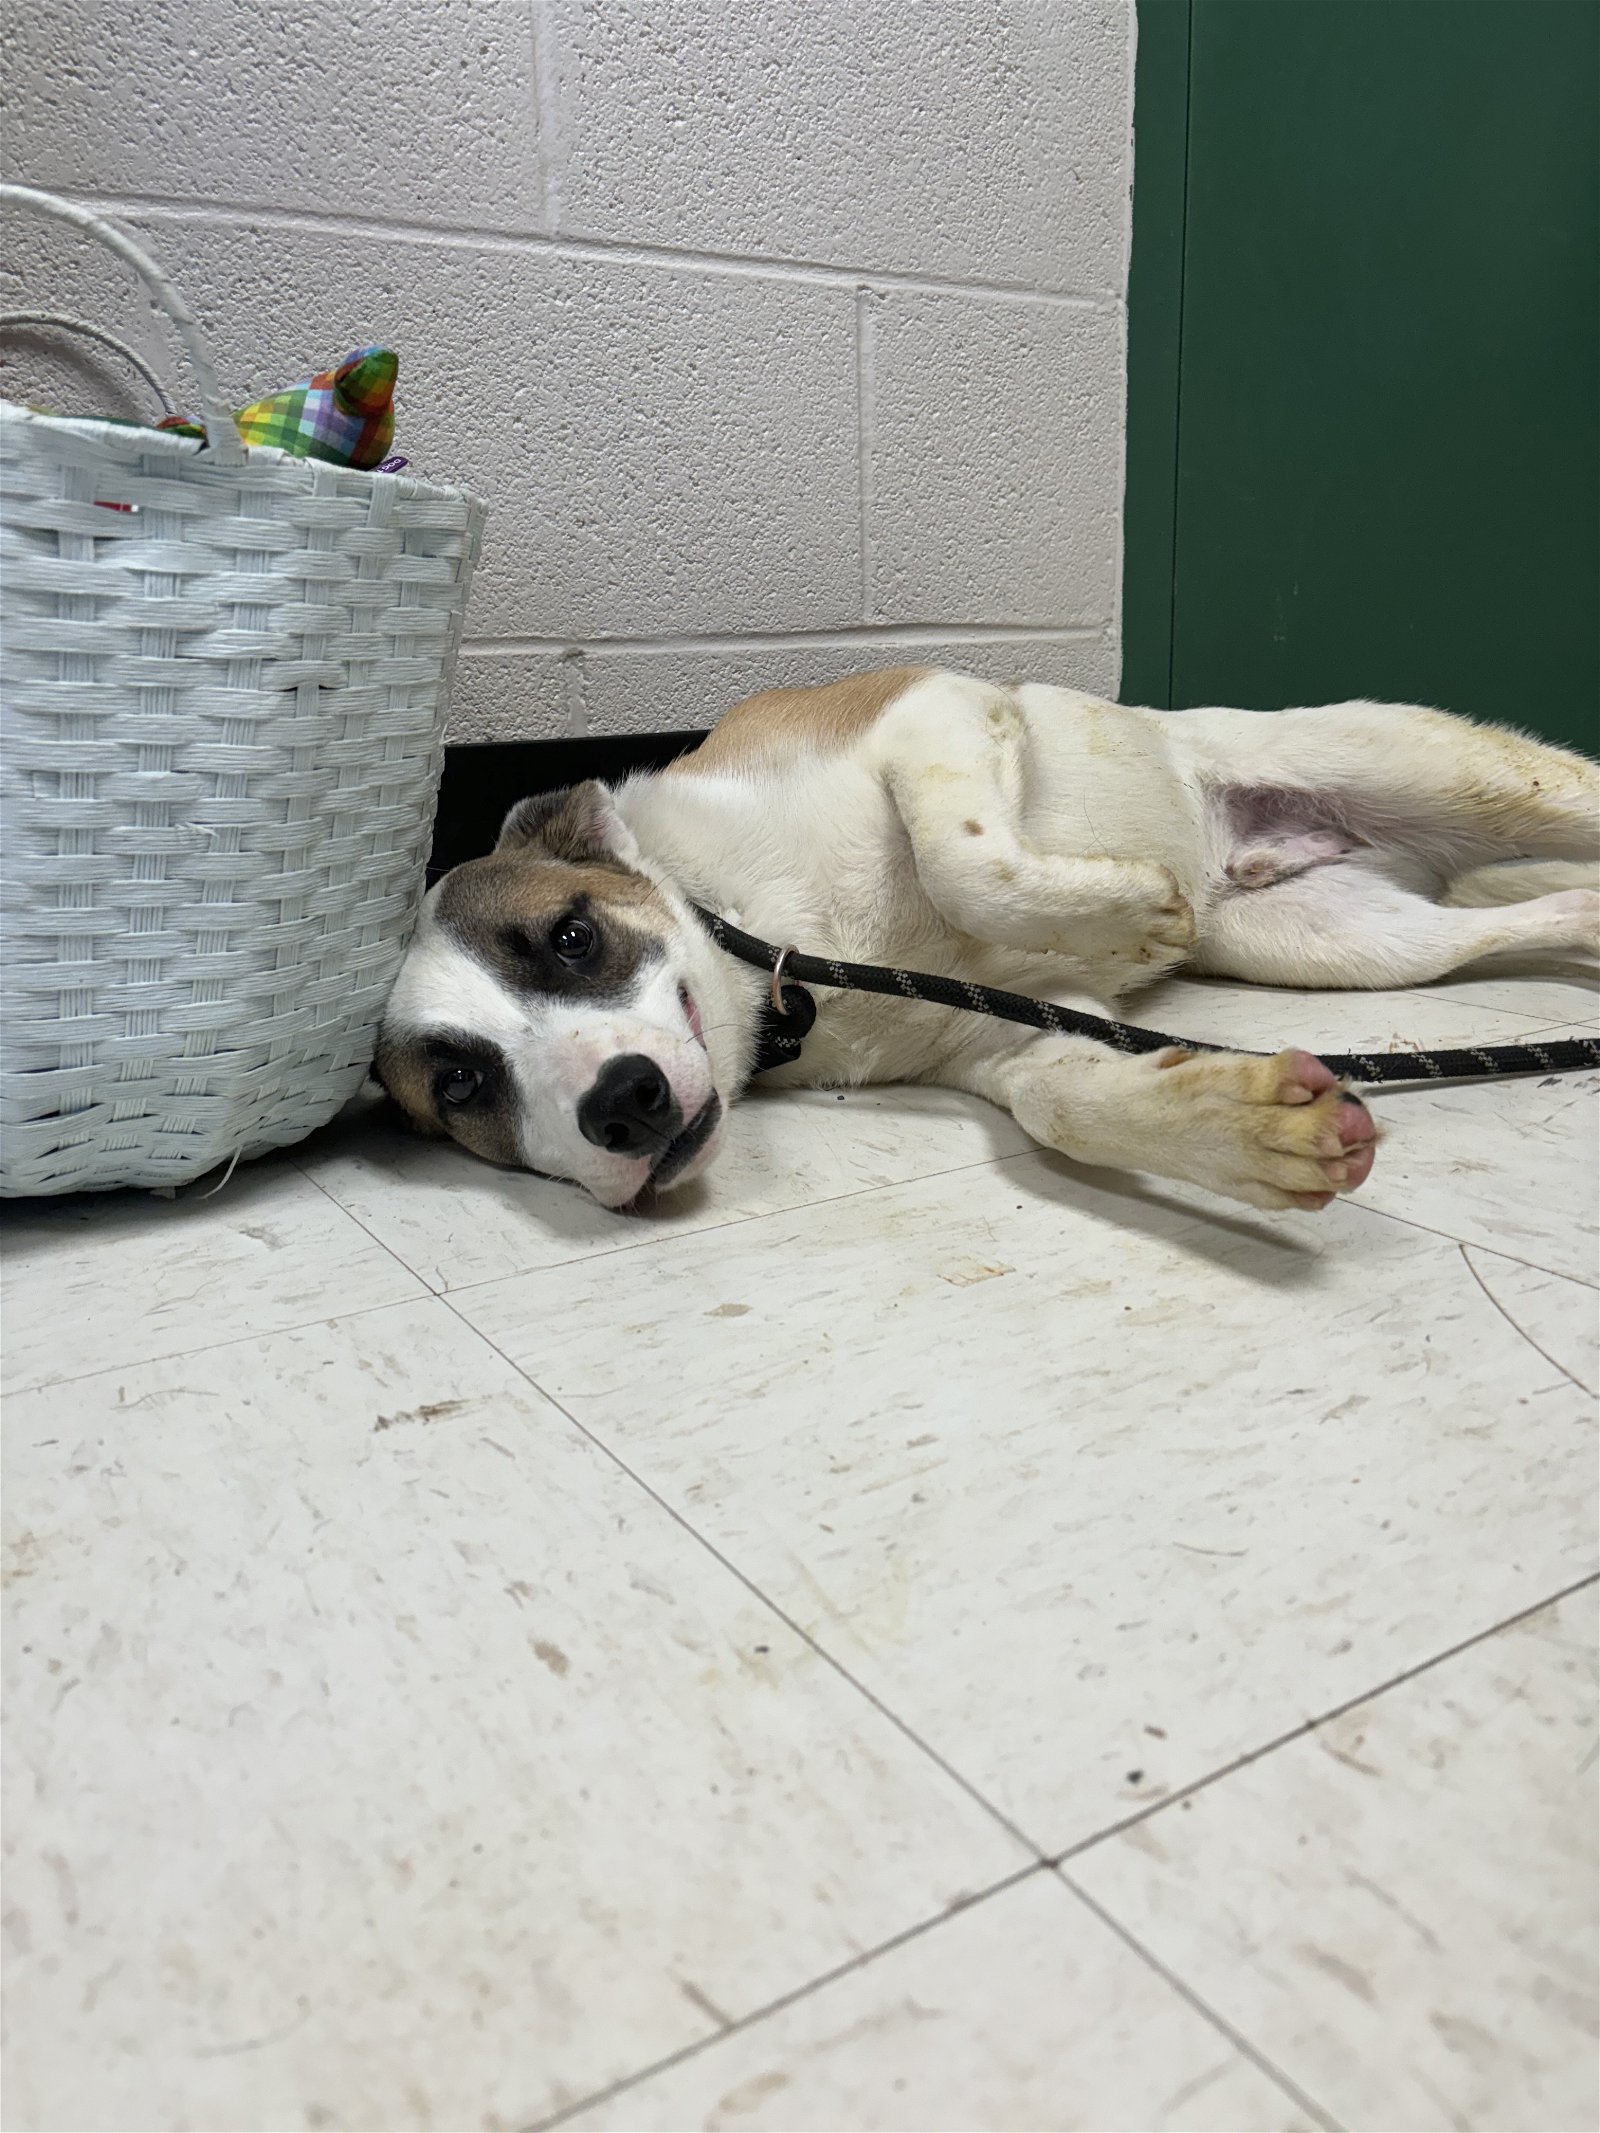 adoptable Dog in Lewisburg, WV named Zuko